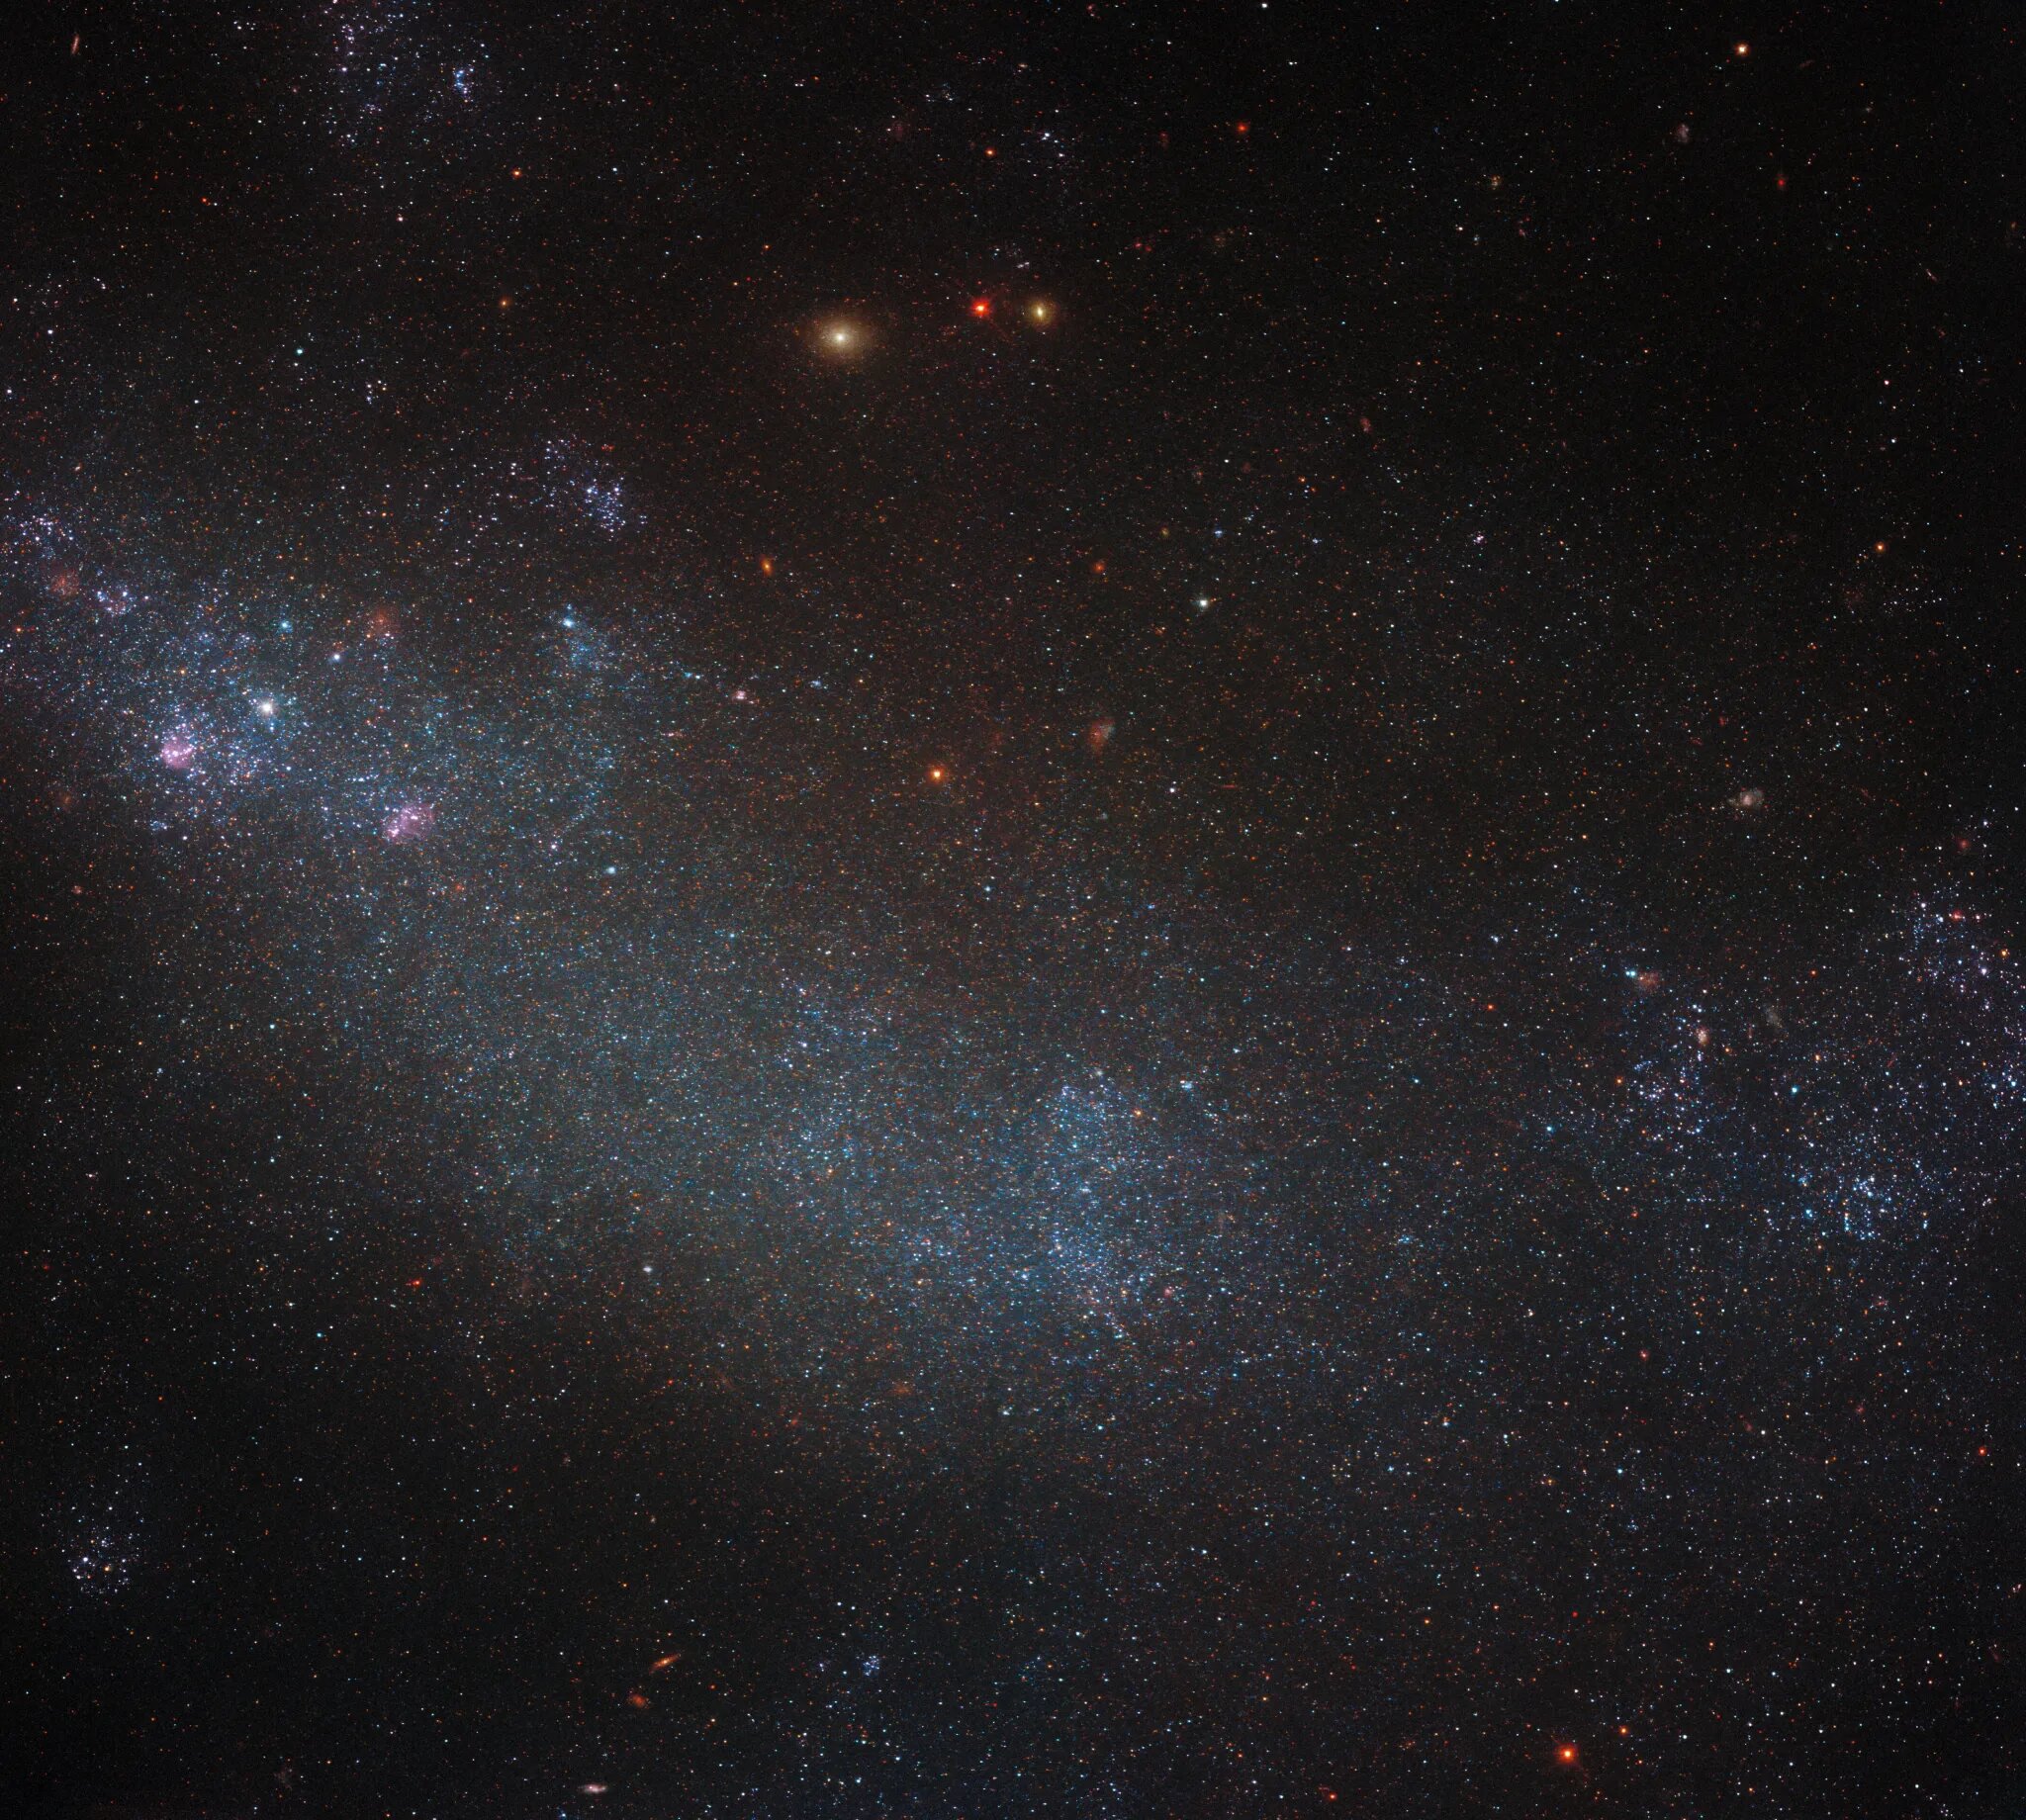 Ova Hubbleova slika prikazuje nepravilnu galaksiju ESO 245-5 koja se nalazi nekih 15 milijuna svjetlosnih godina od Zemlje. Zasluge: ESA